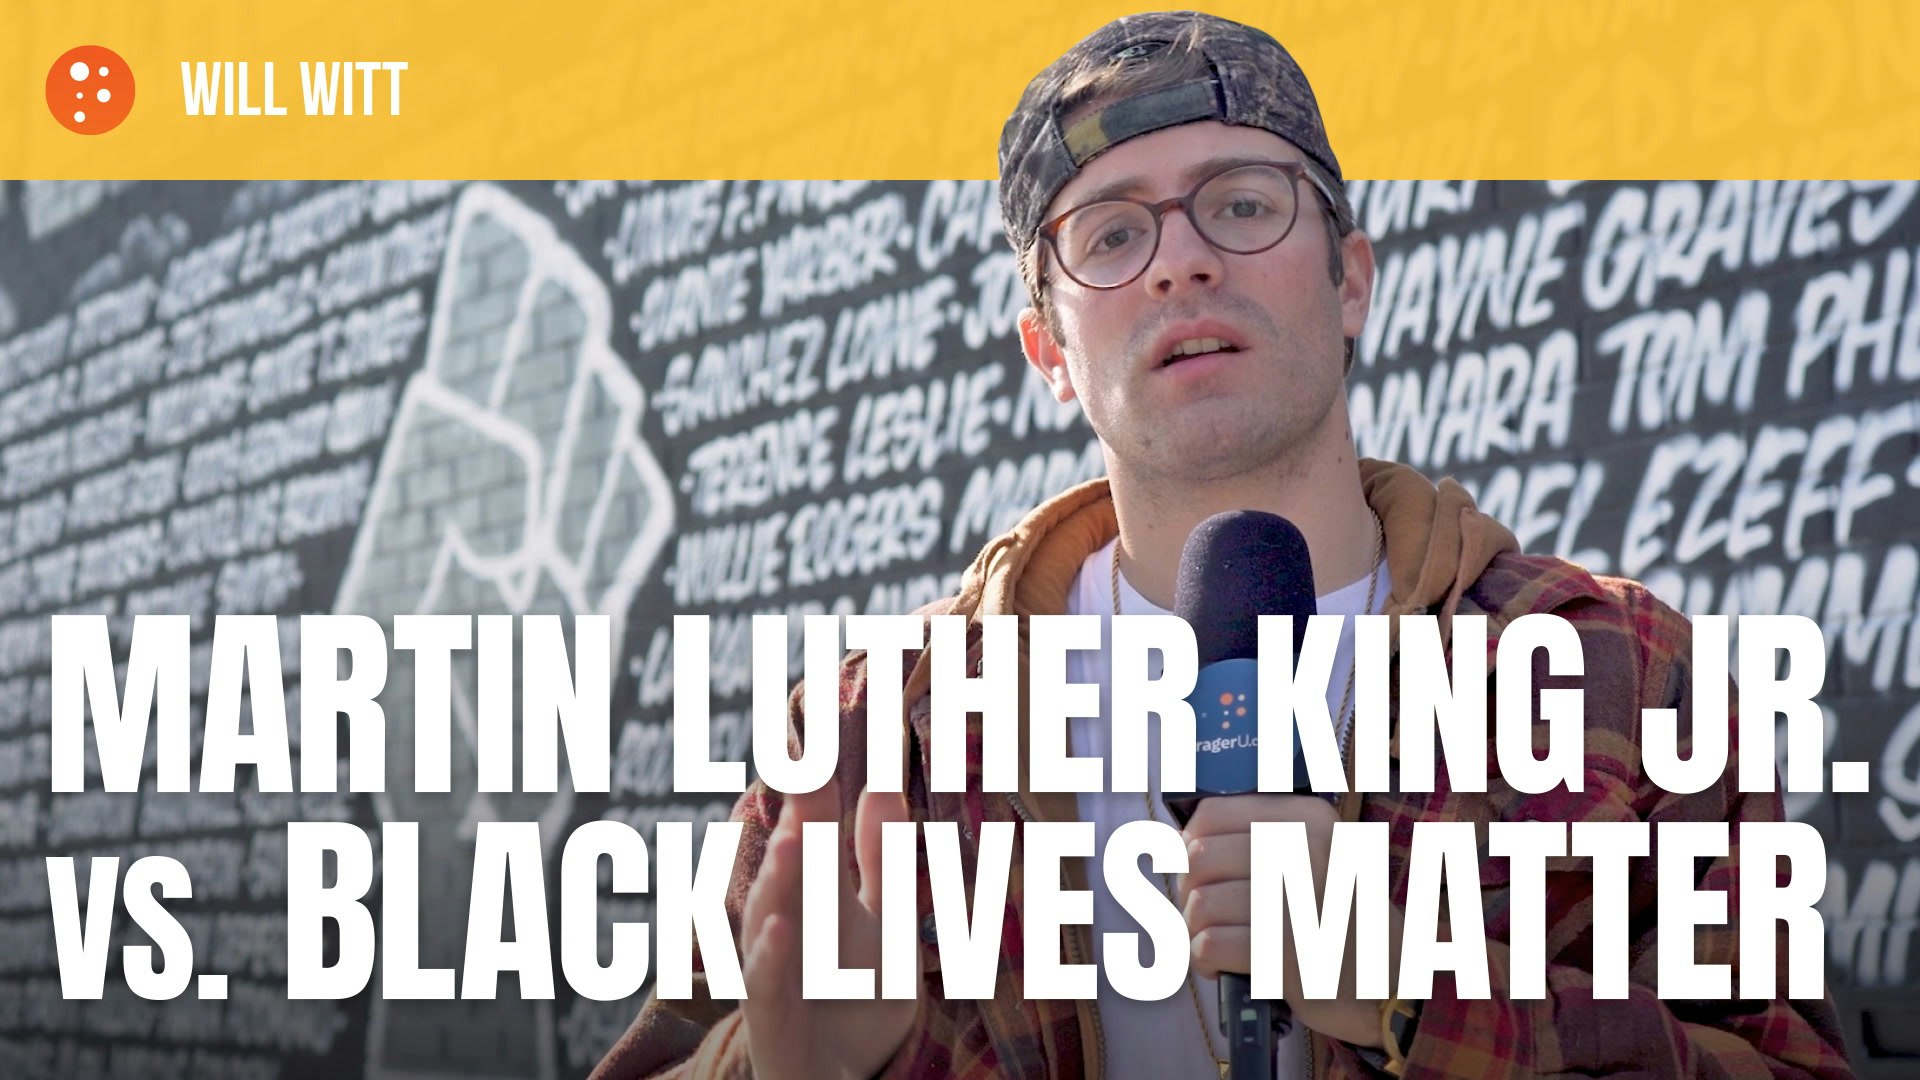 Martin Luther King Jr. vs. Black Lives Matter